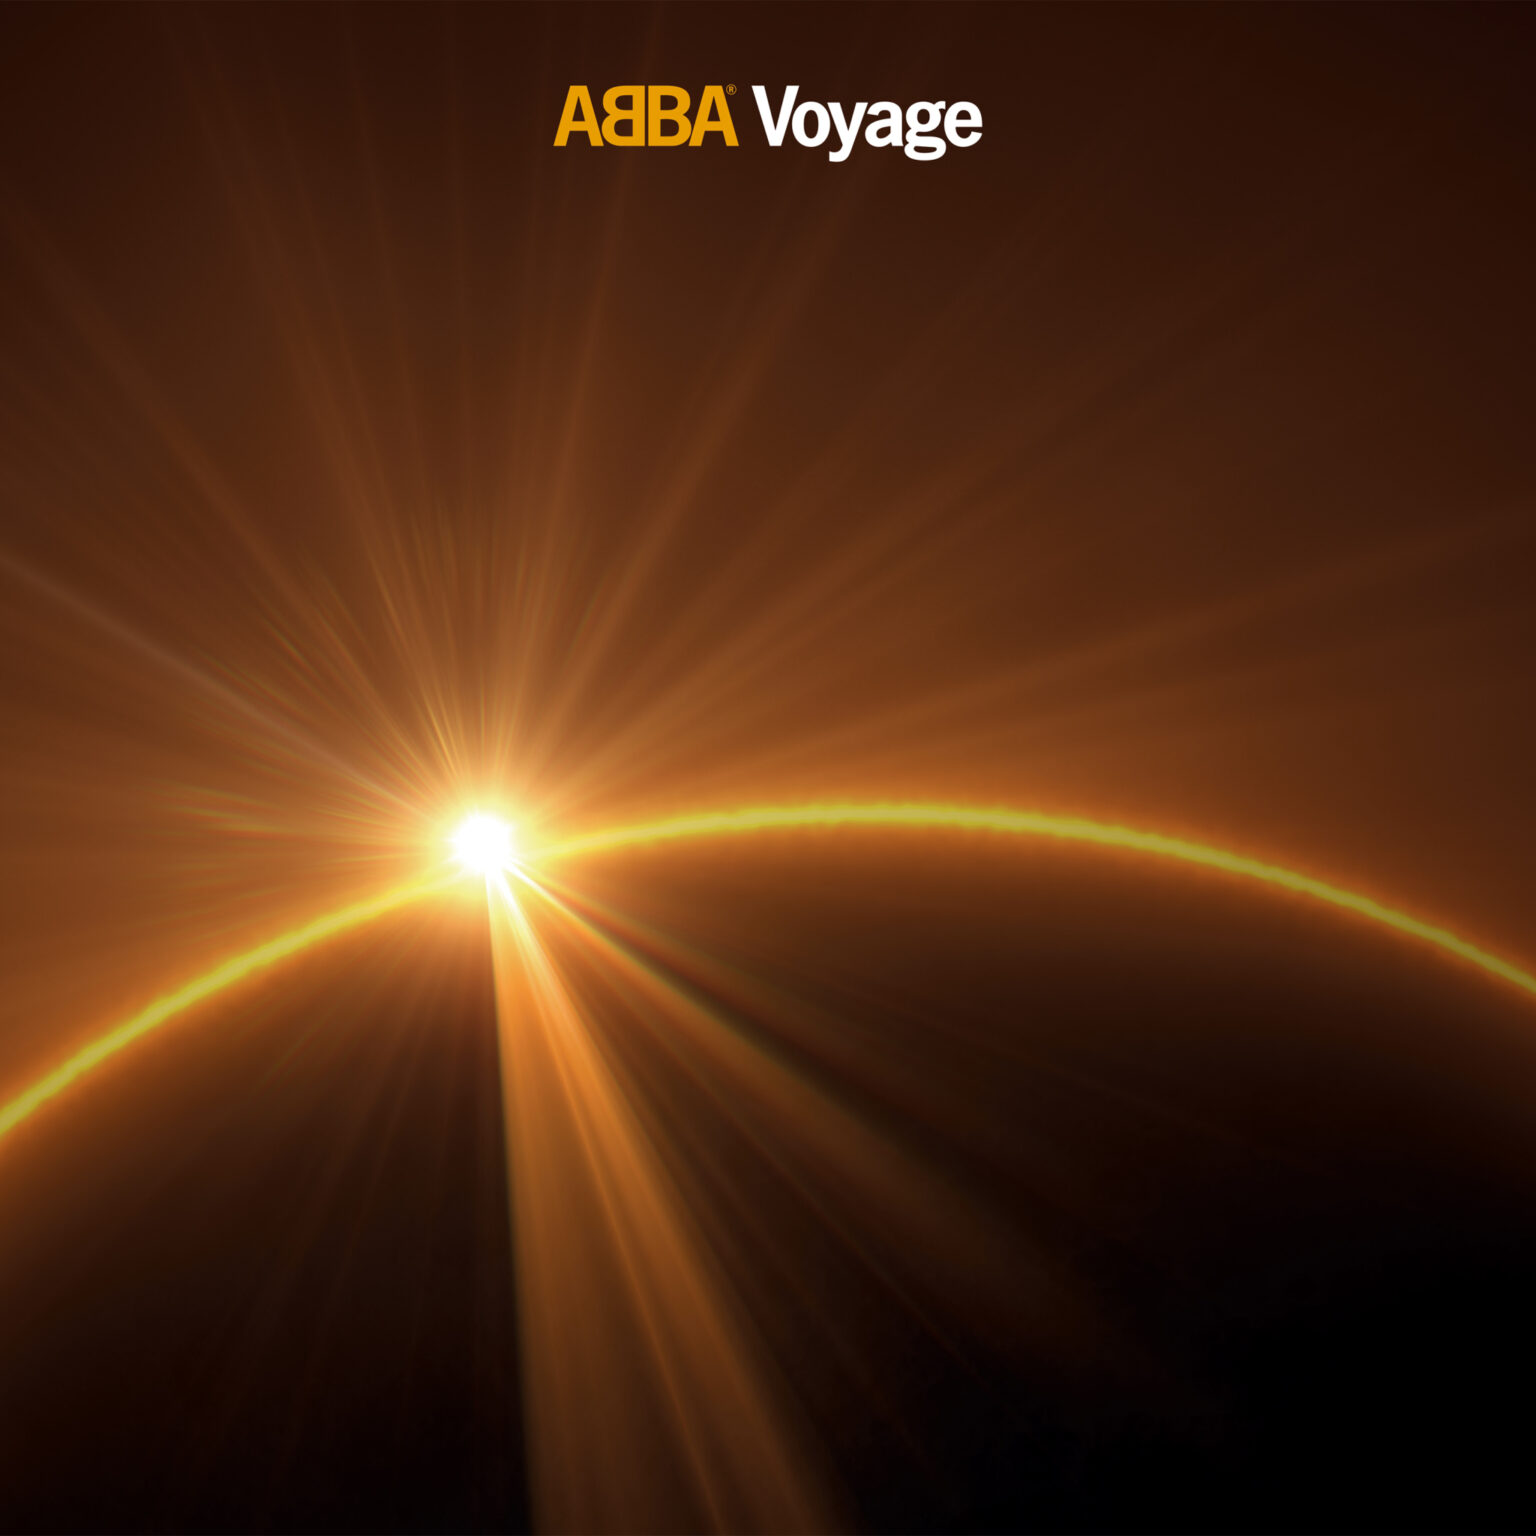 ABBA le retour! Cover_voyage-1536x1536